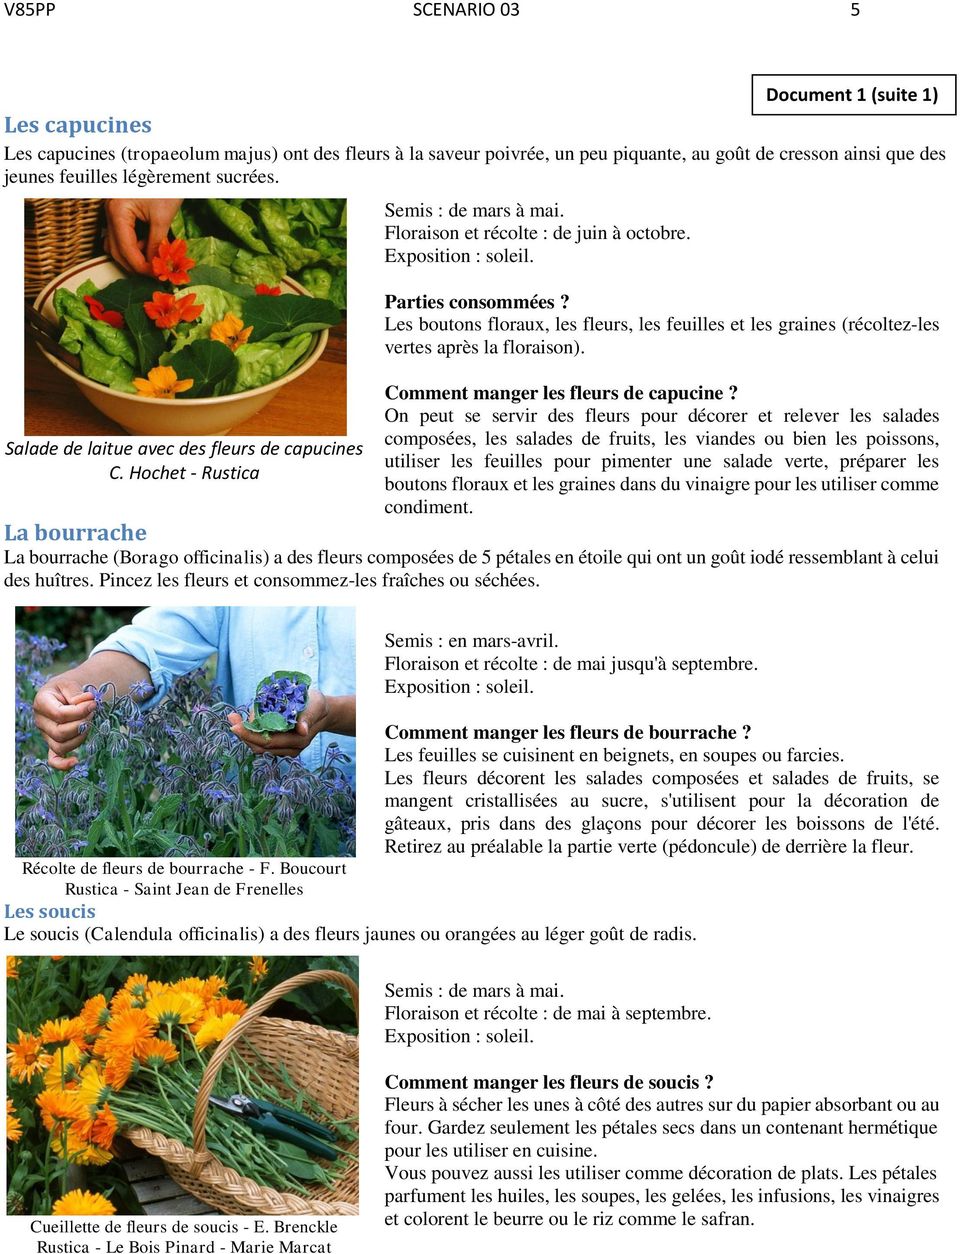 Les boutons floraux, les fleurs, les feuilles et les graines (récoltez-les vertes après la floraison). Comment manger les fleurs de capucine?